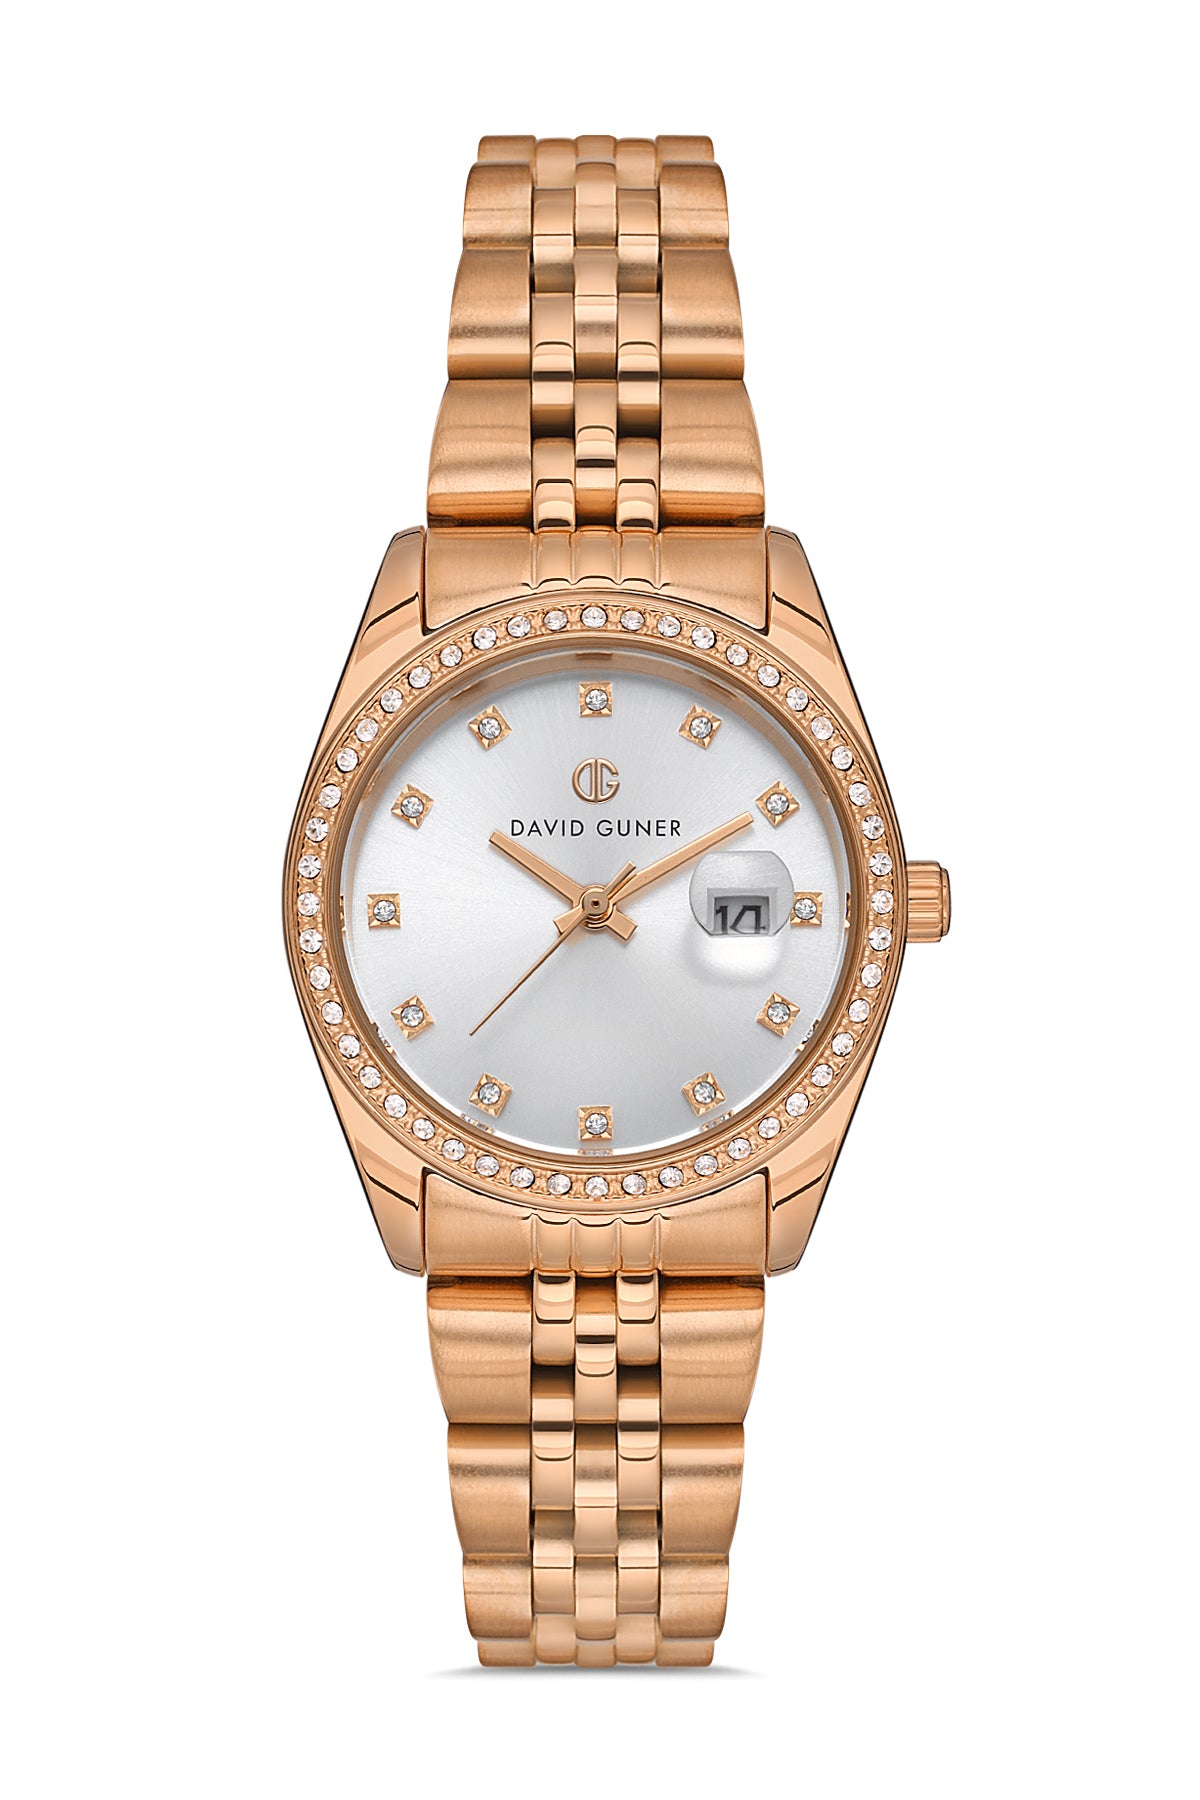 David Guner Rose Plated Silver Dial Calendar Women's Wristwatch